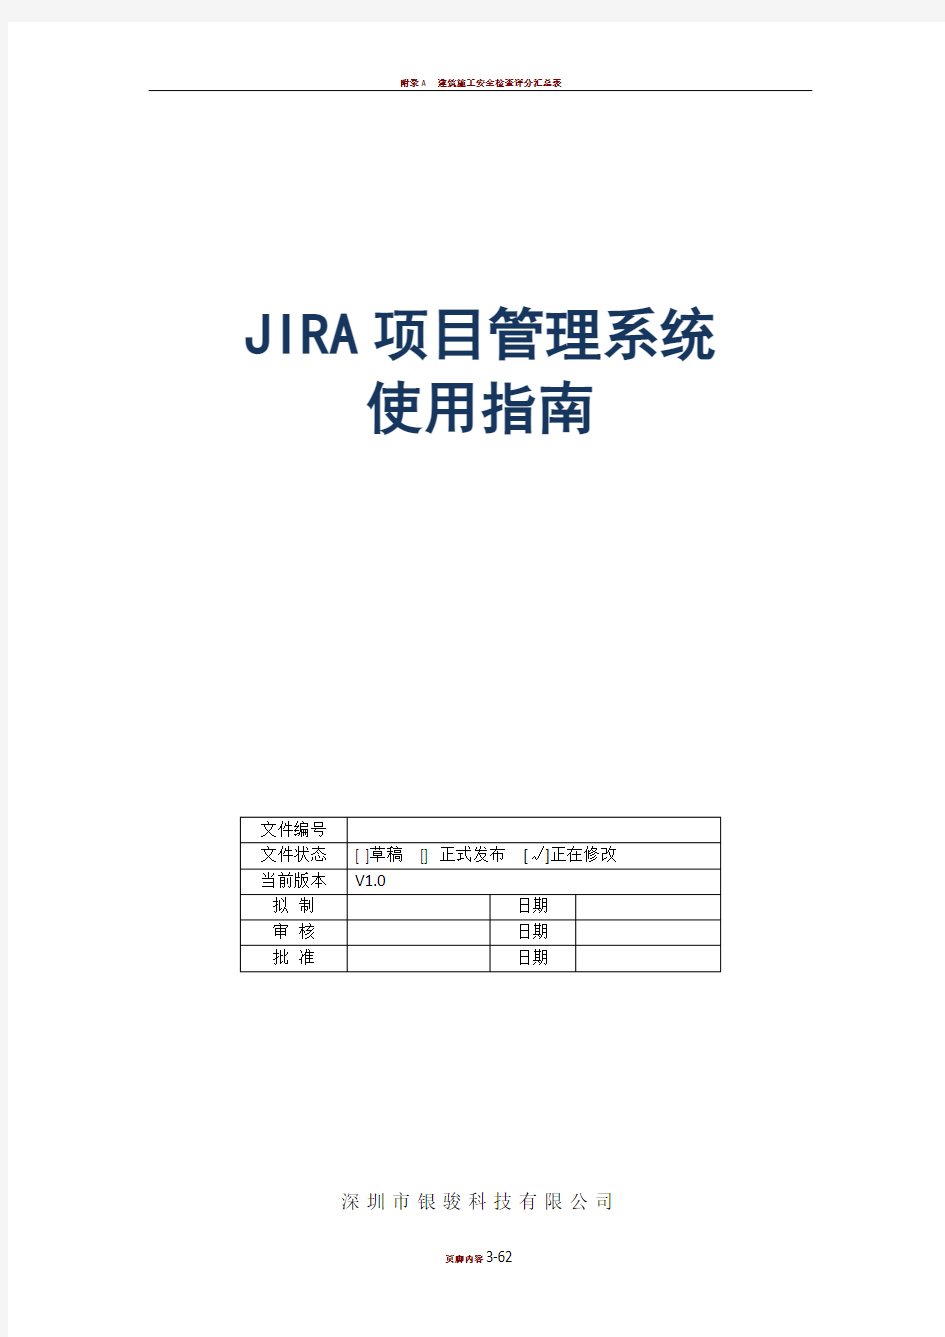 jira项目管理系统使用指南